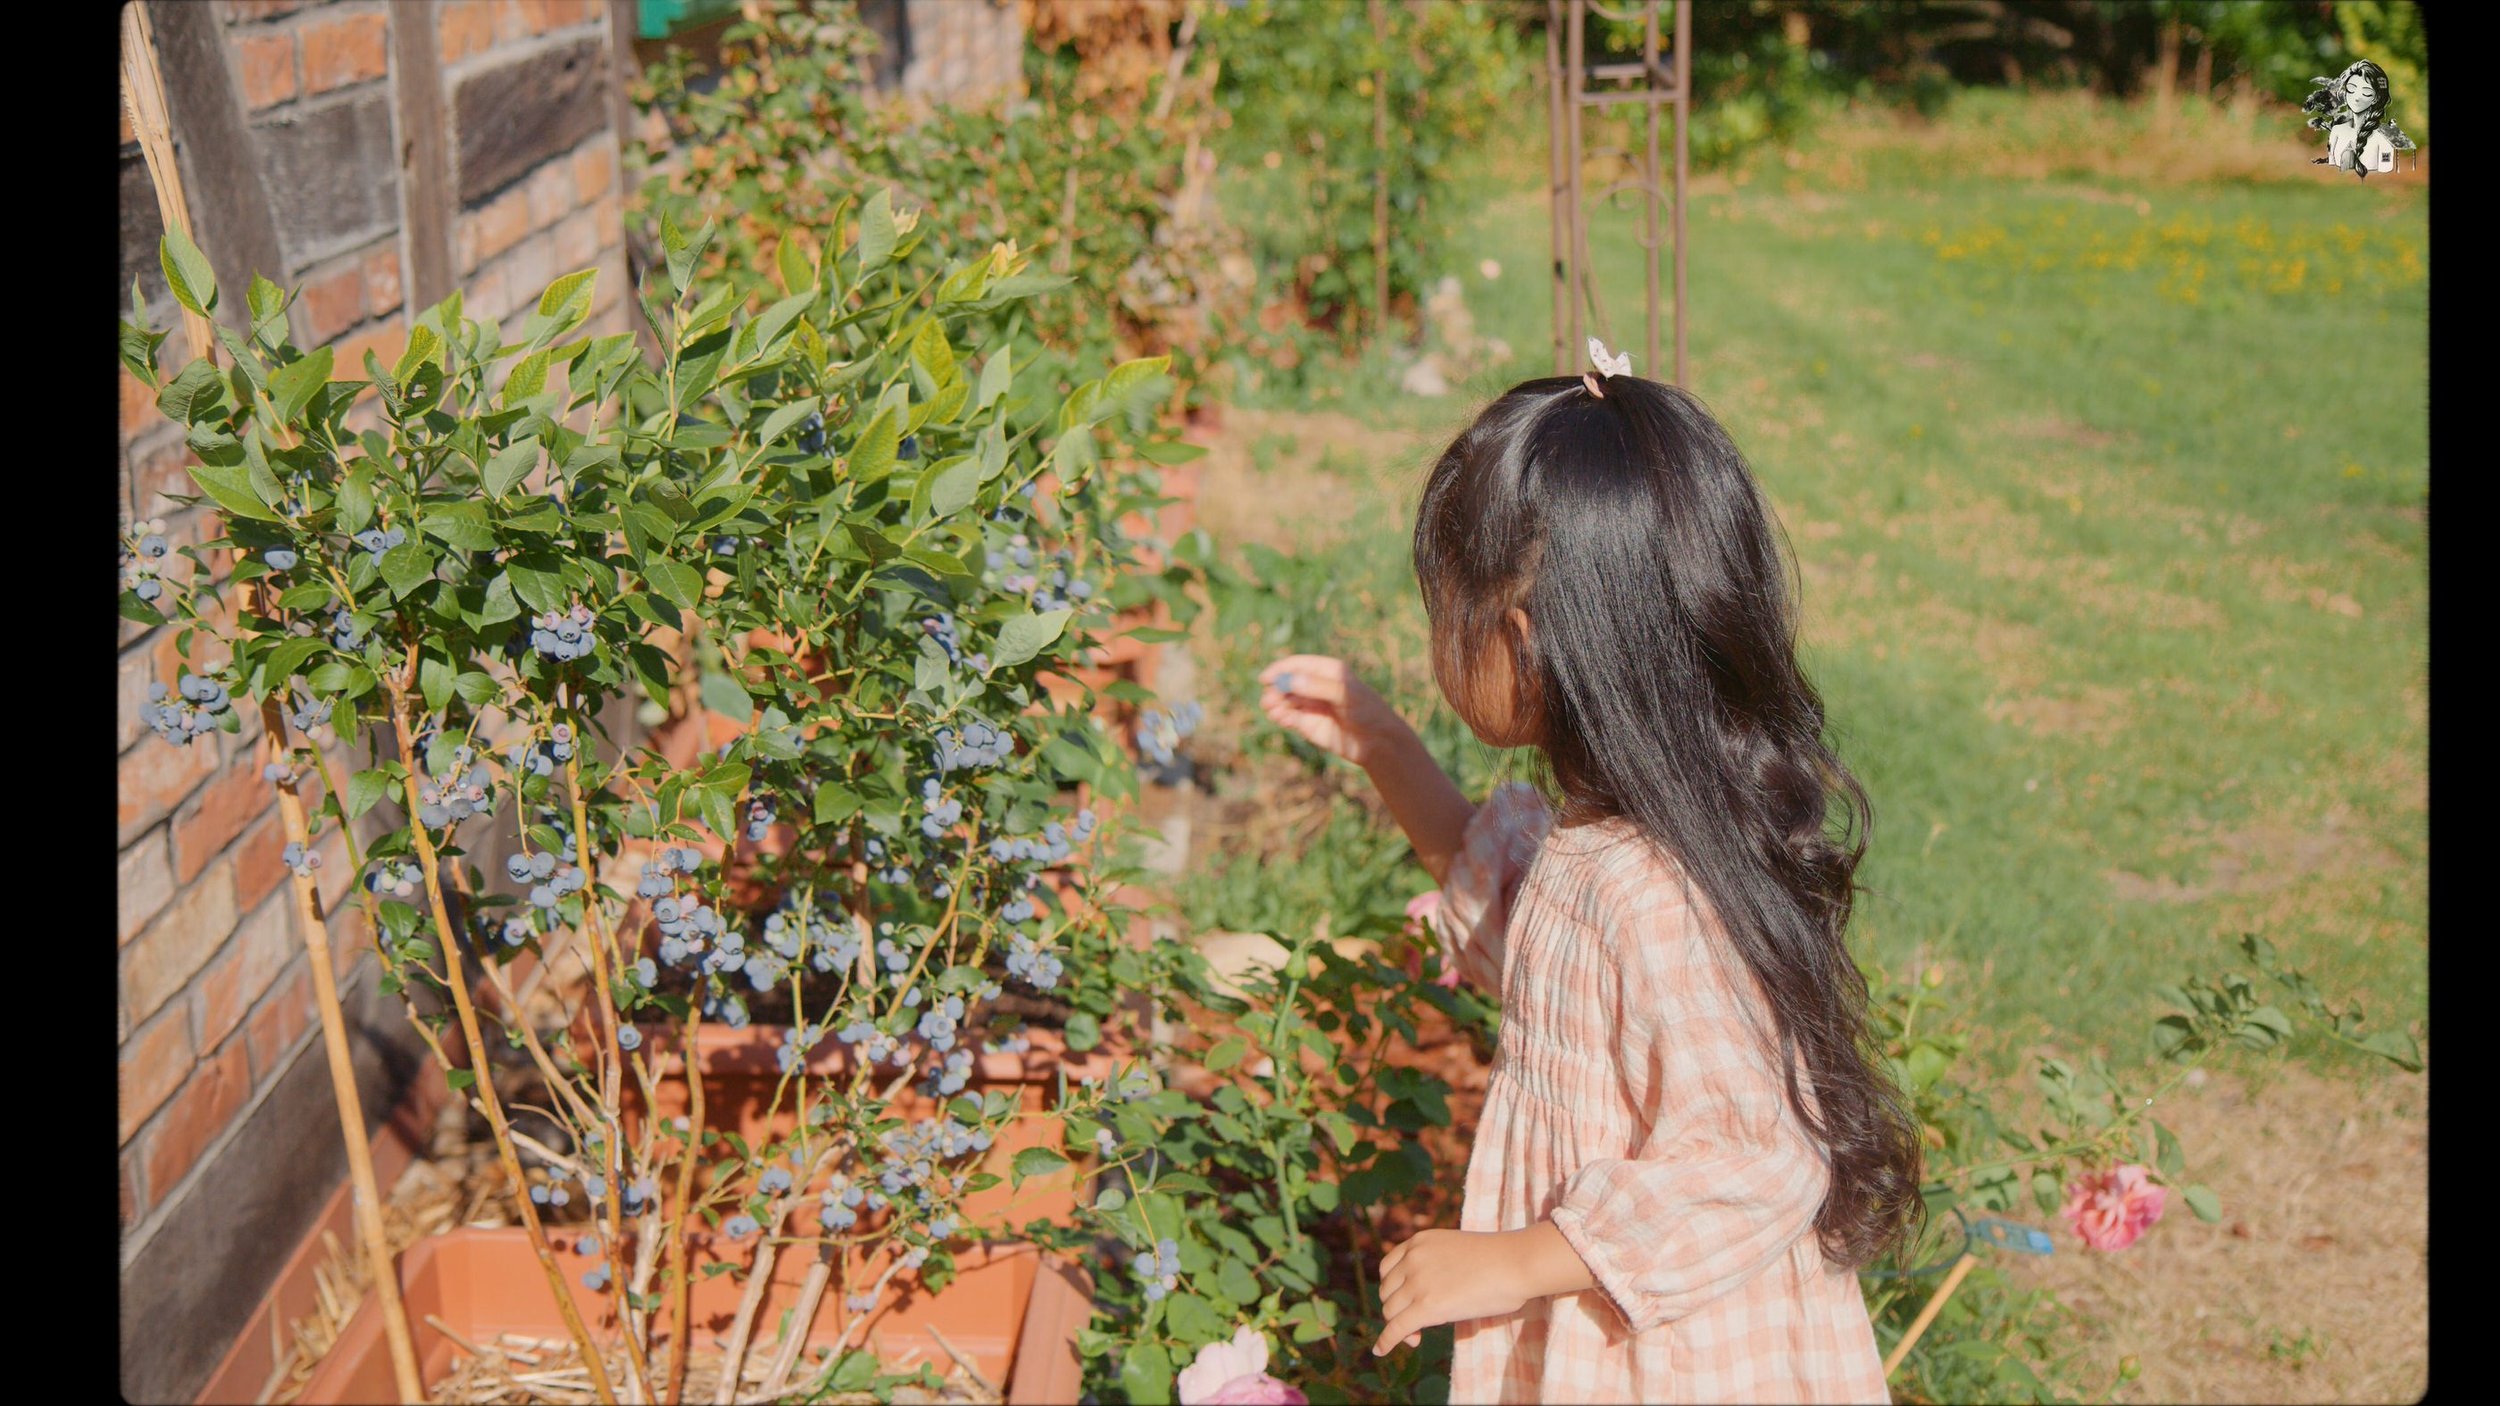 Growing Berries in the Backyard Garden - Her86m2 _1.191.1.jpg